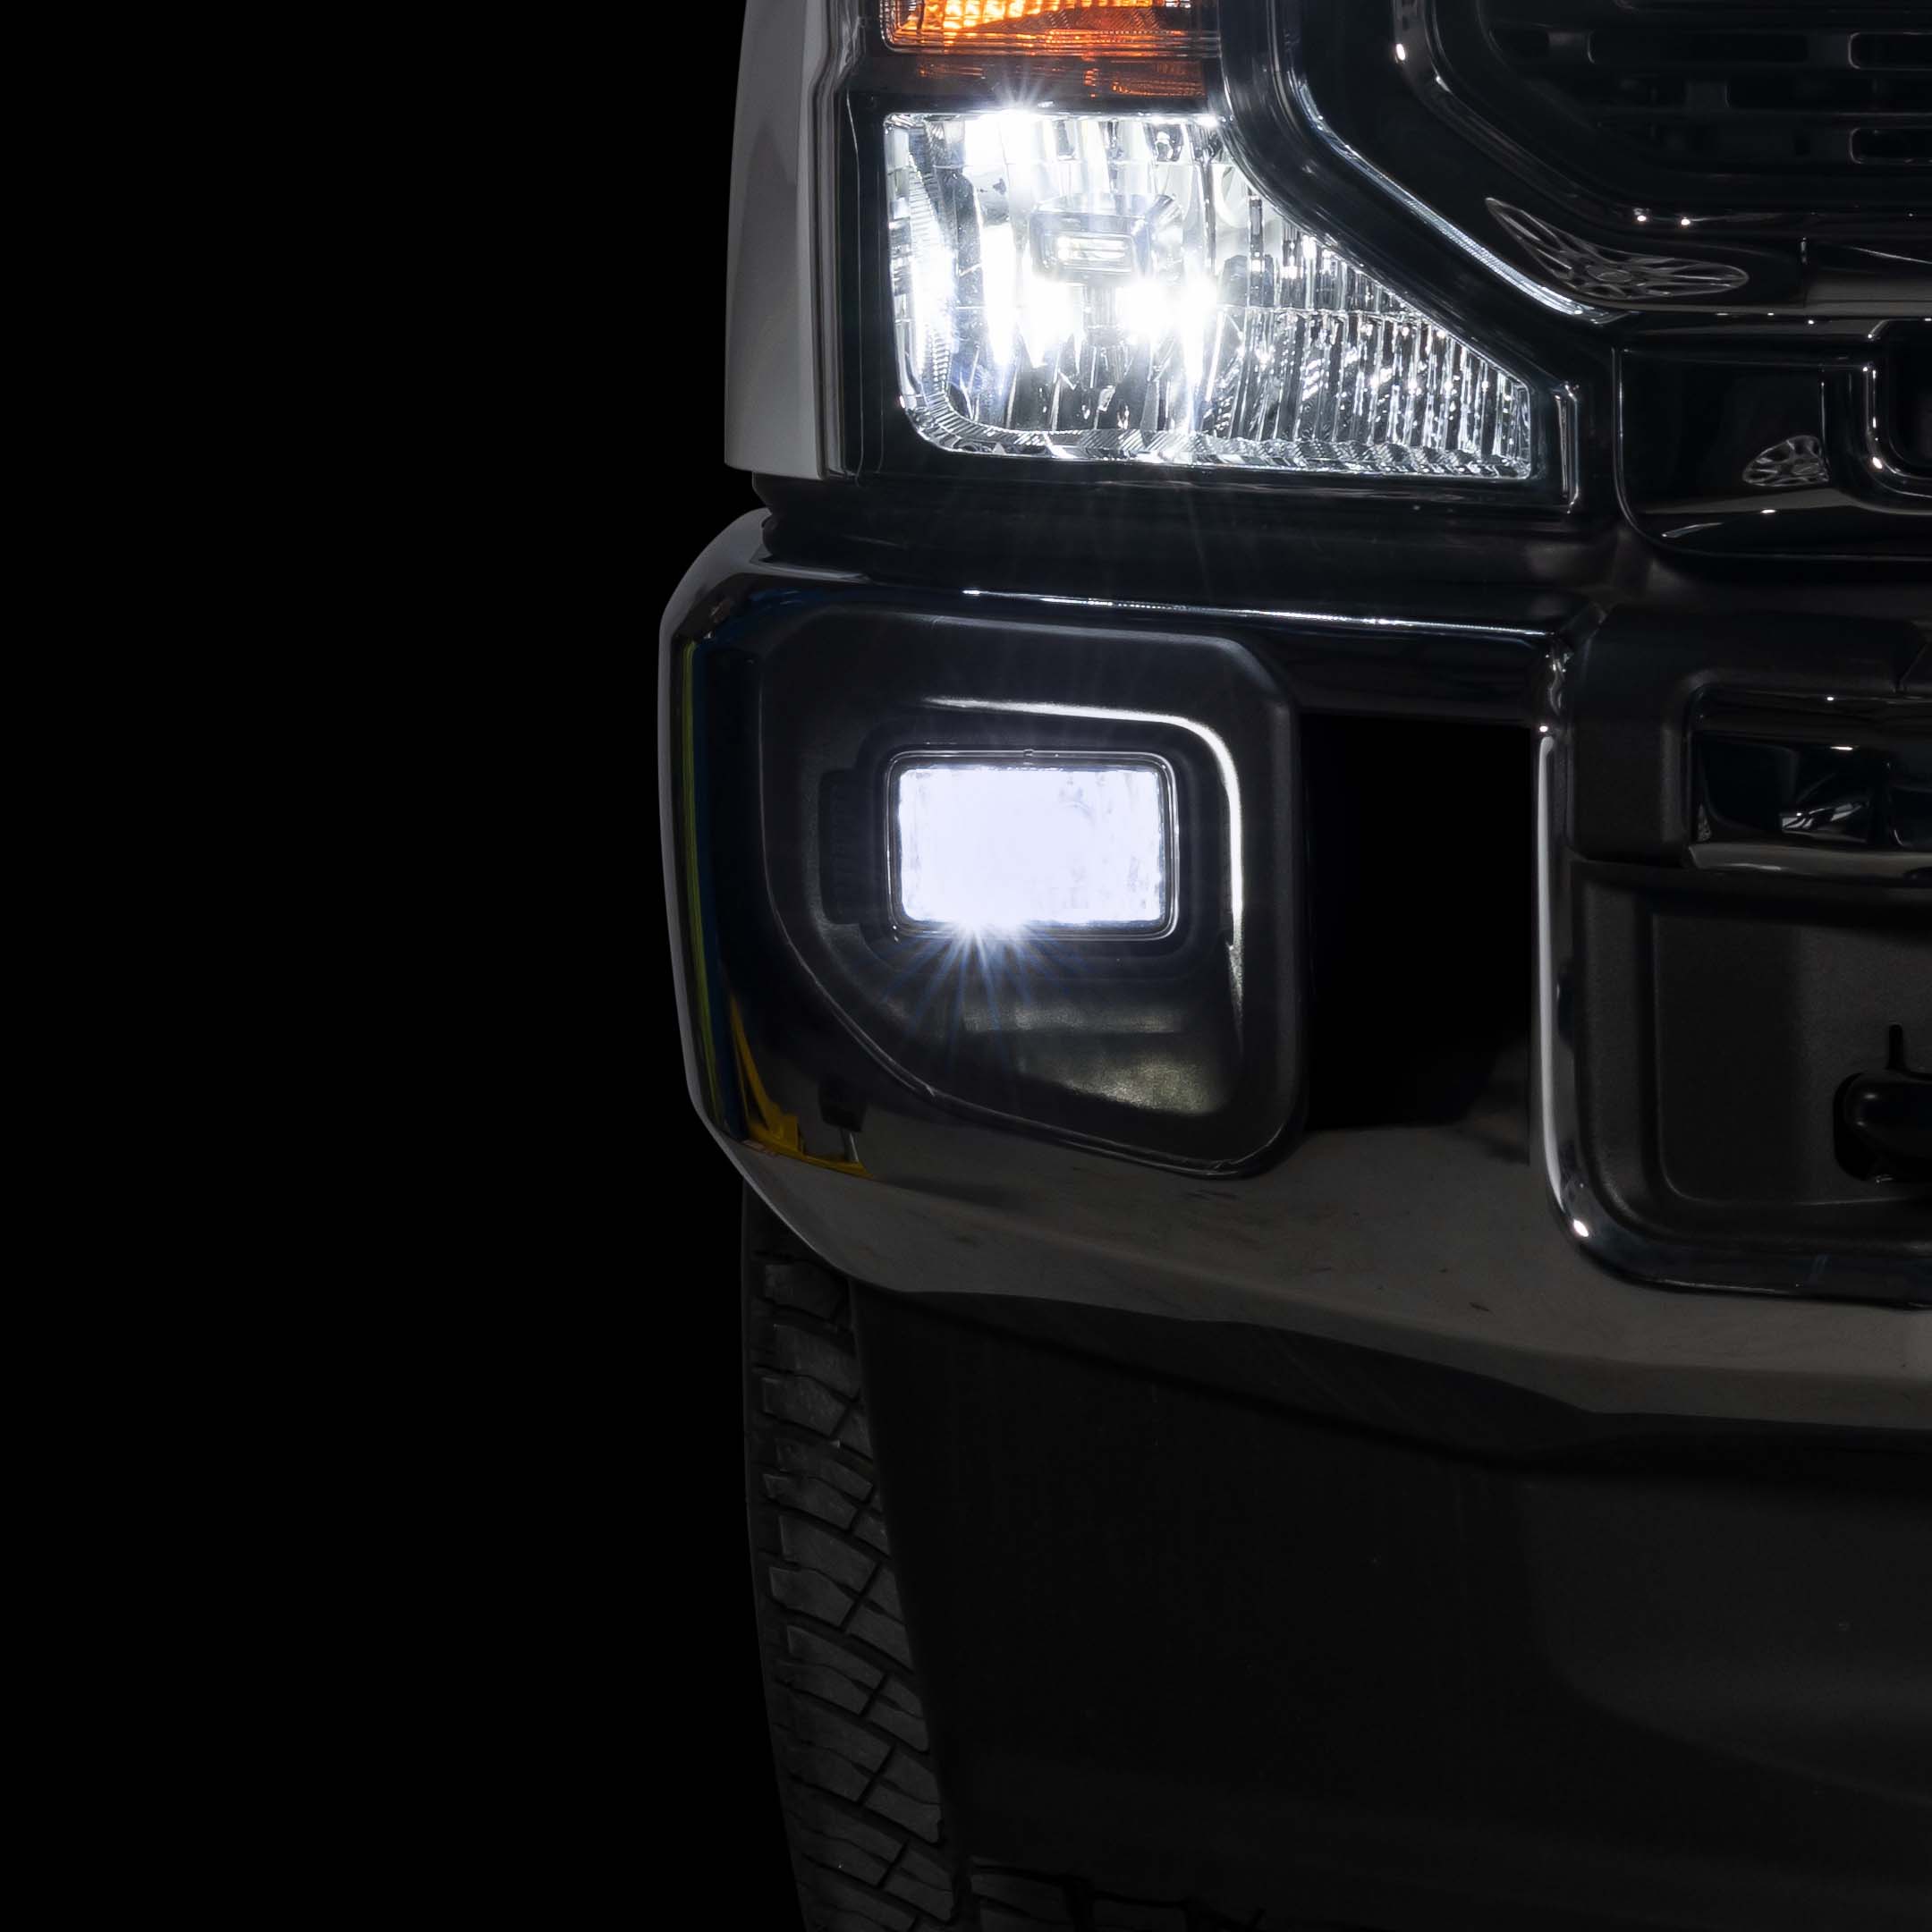 LED Lighting for Trucks - LUX Lighting Systems